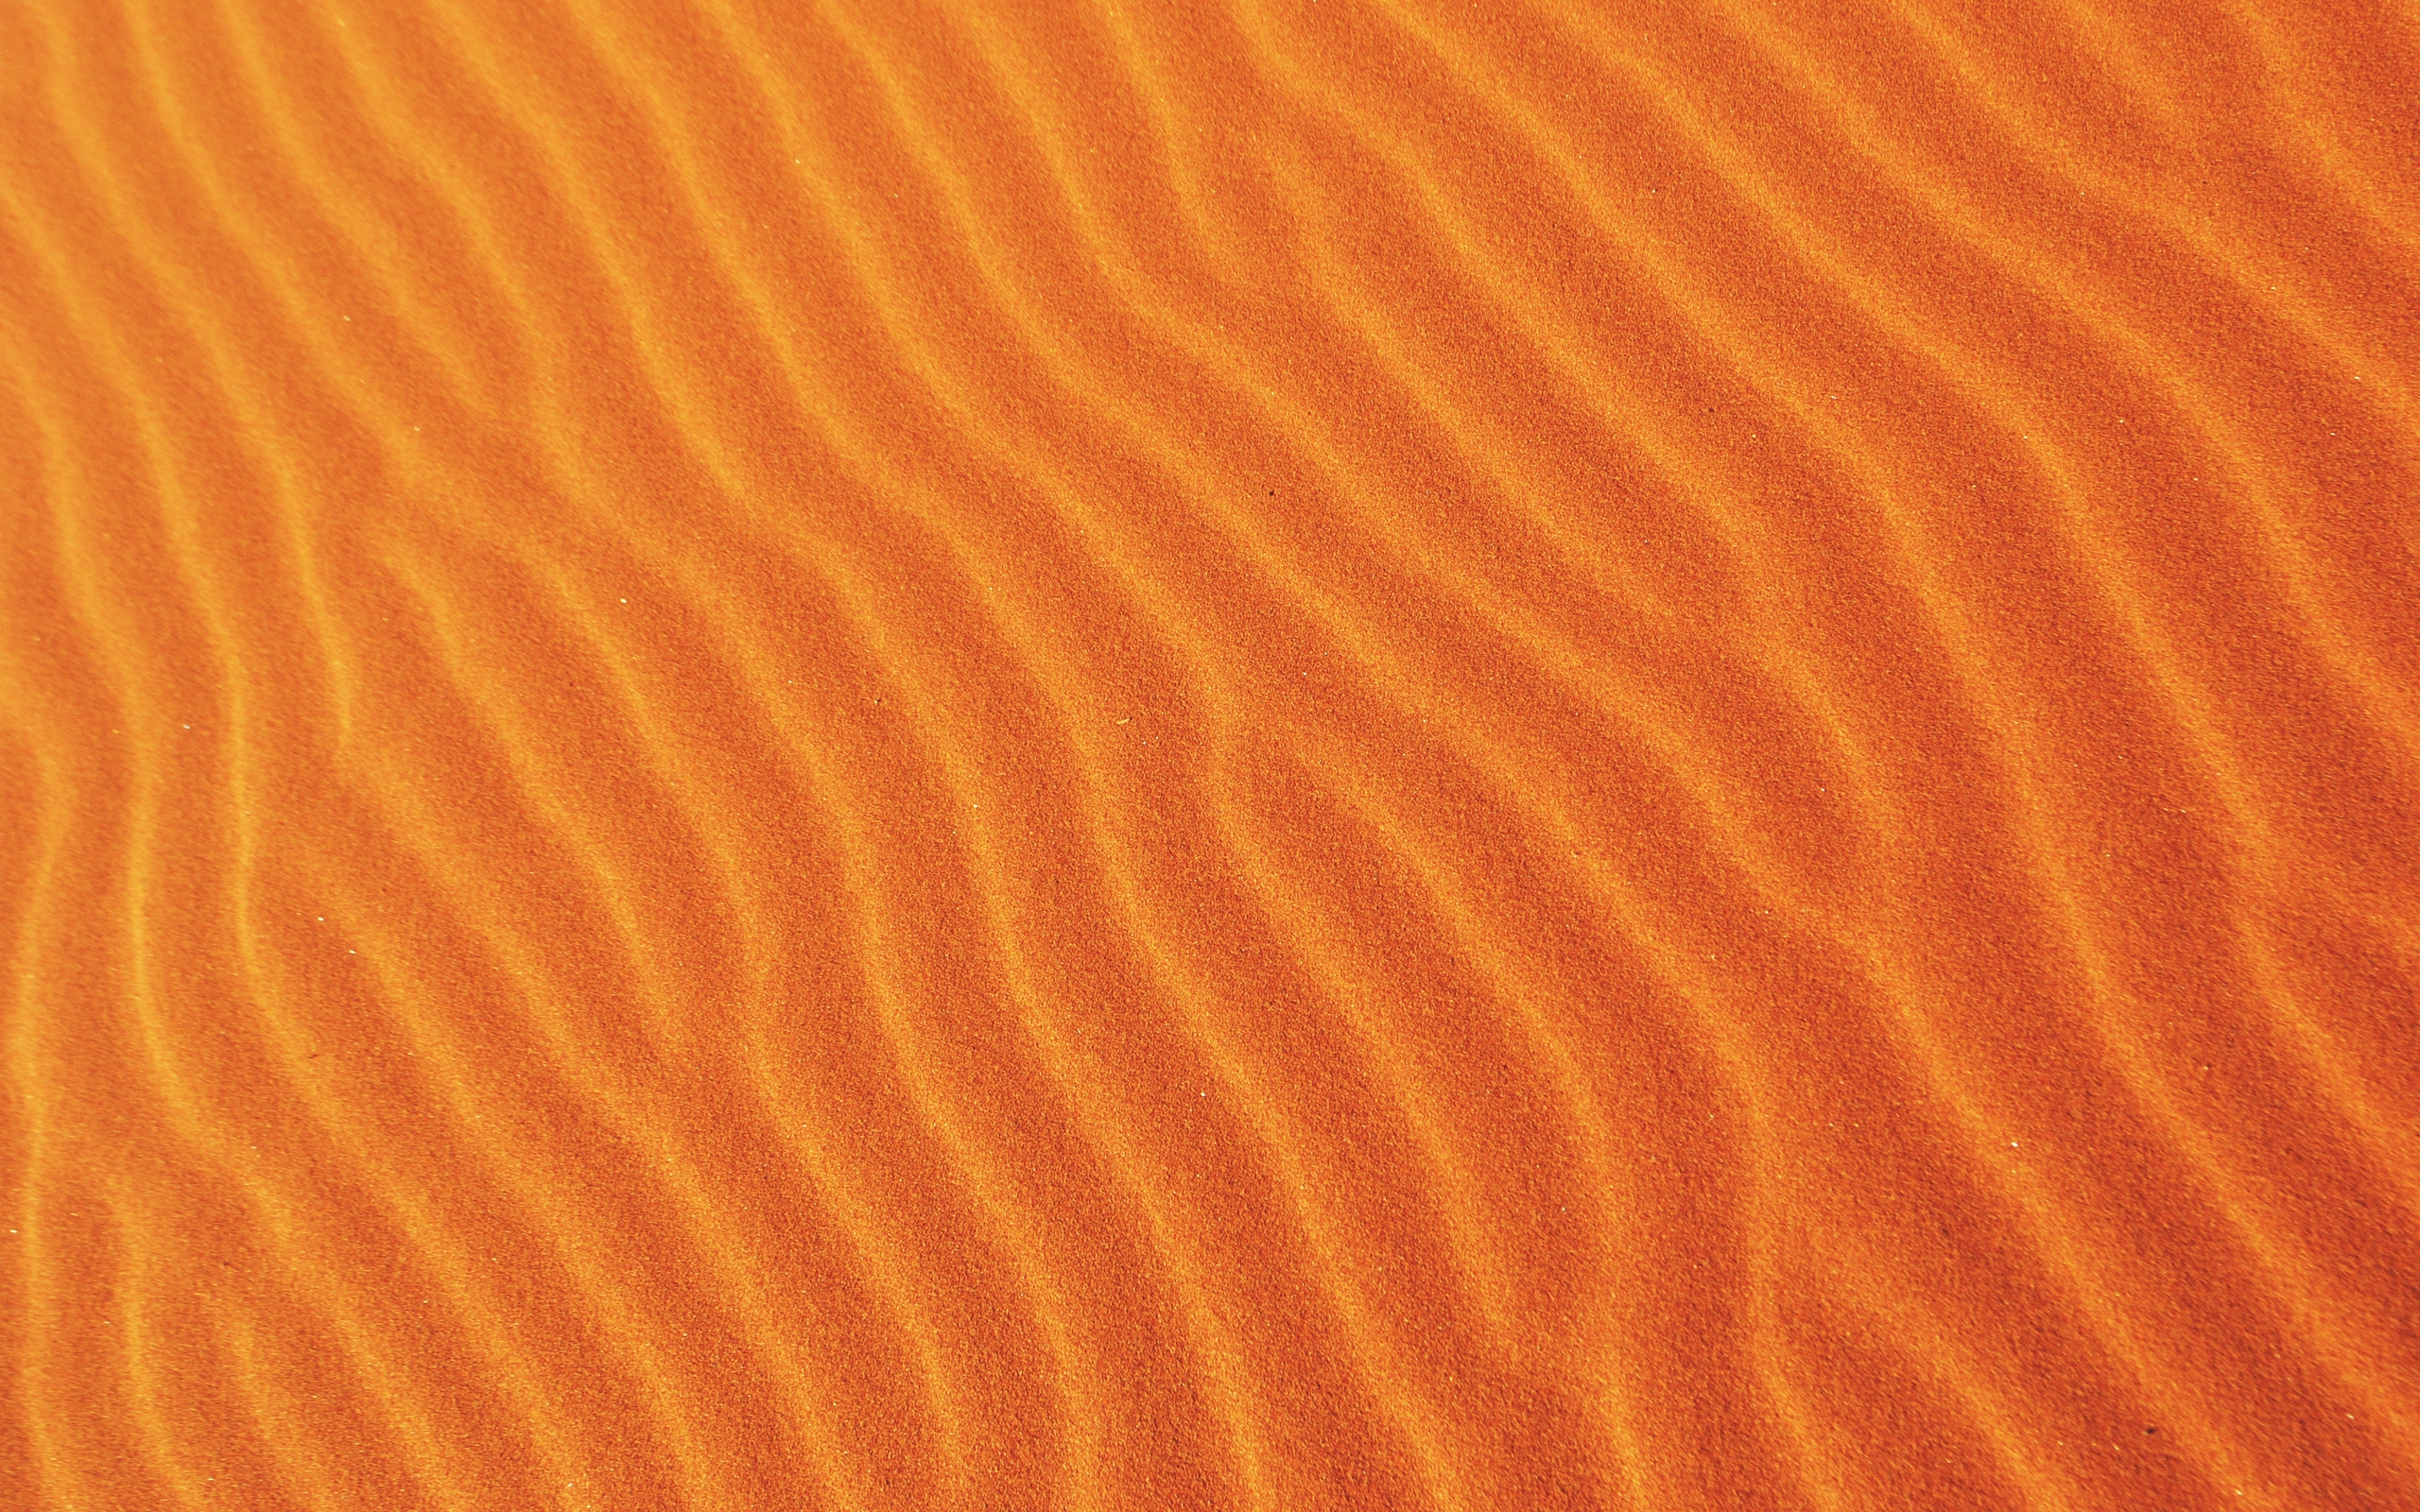 песок, рельеф, текстура, дюны, оранжевый фон, hd full, sand, relief, texture, dunes, orange background